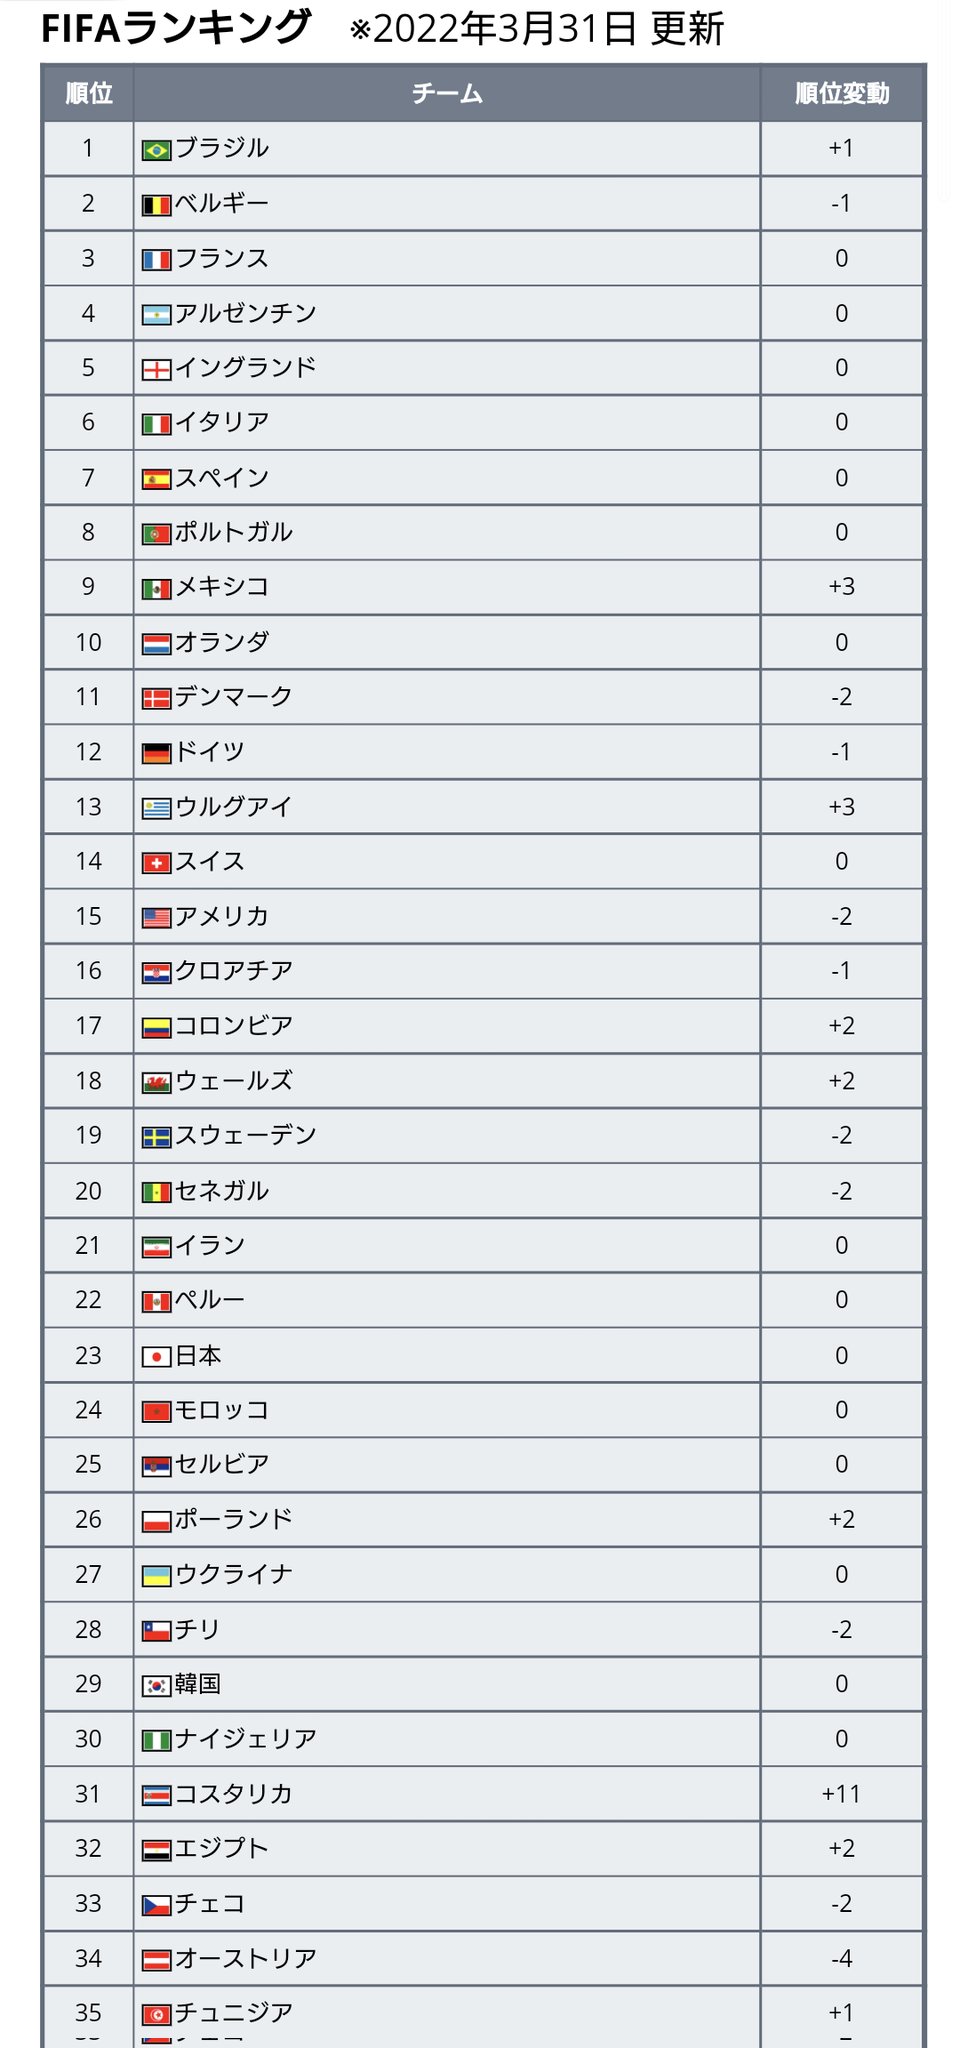 ワールドサッカー代表戦 最新fifaランキングが発表 22 3 31発表 日本は前回と変わらず23位で アジア2位キープ 全体では 3年半首位をキープしてきたベルギーが2位となり 変わってブラジルが首位に T Co Pz8sxifyv3 Twitter